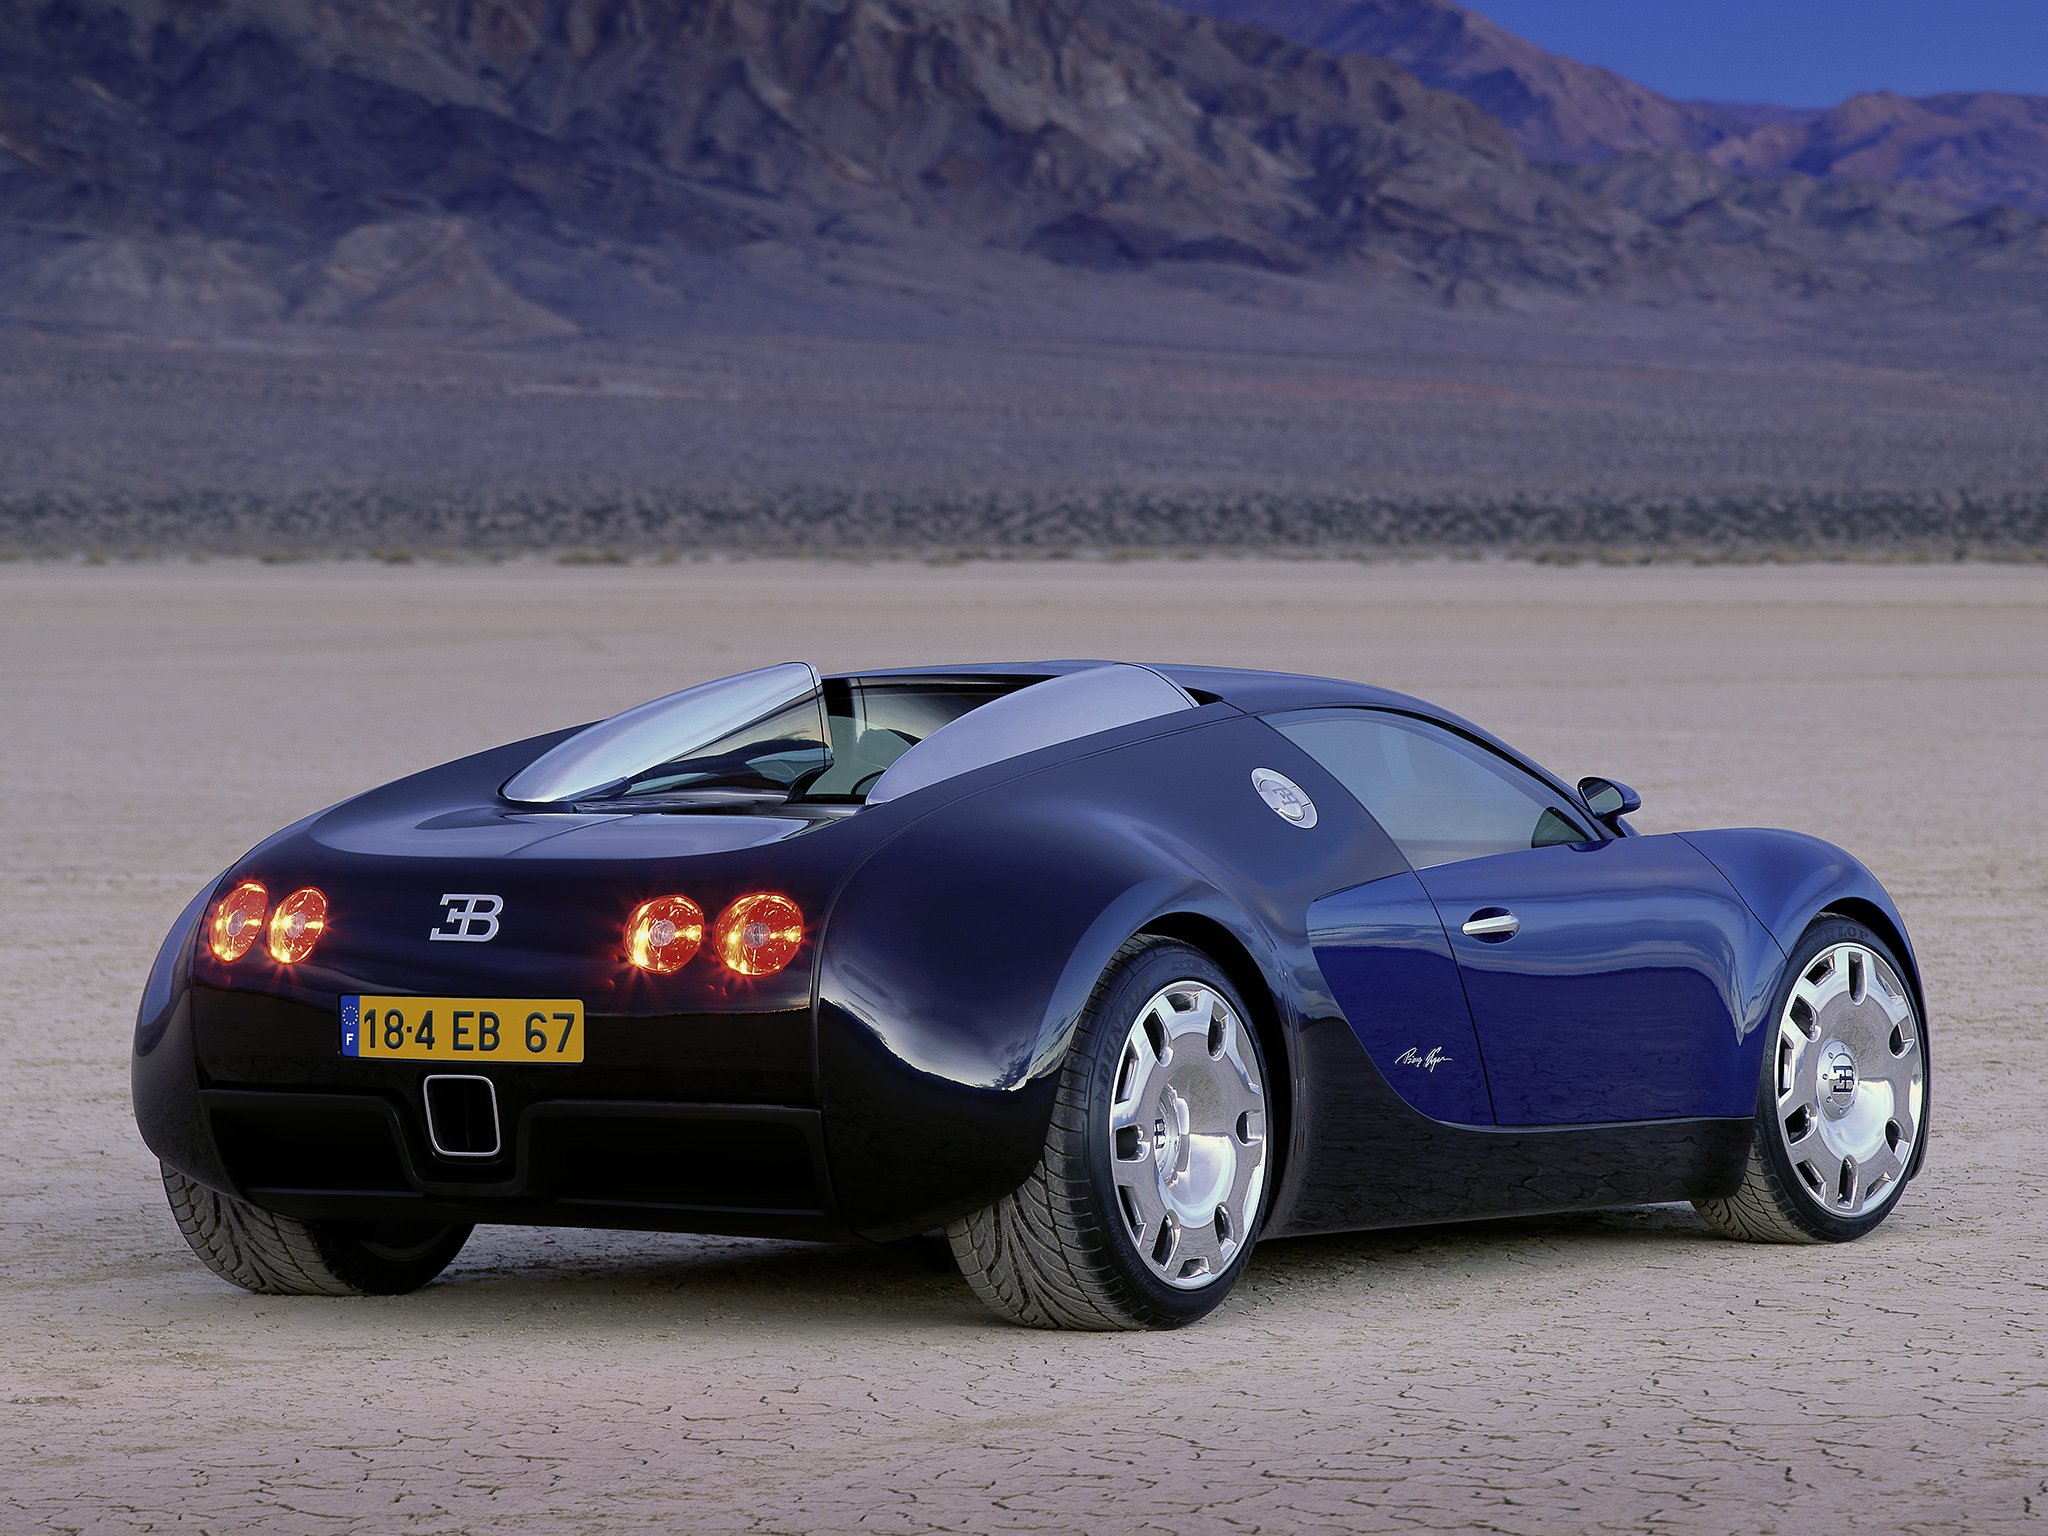 1999, Bugatti, E b, 18 4, Veyron, Concept, Supercar Wallpaper